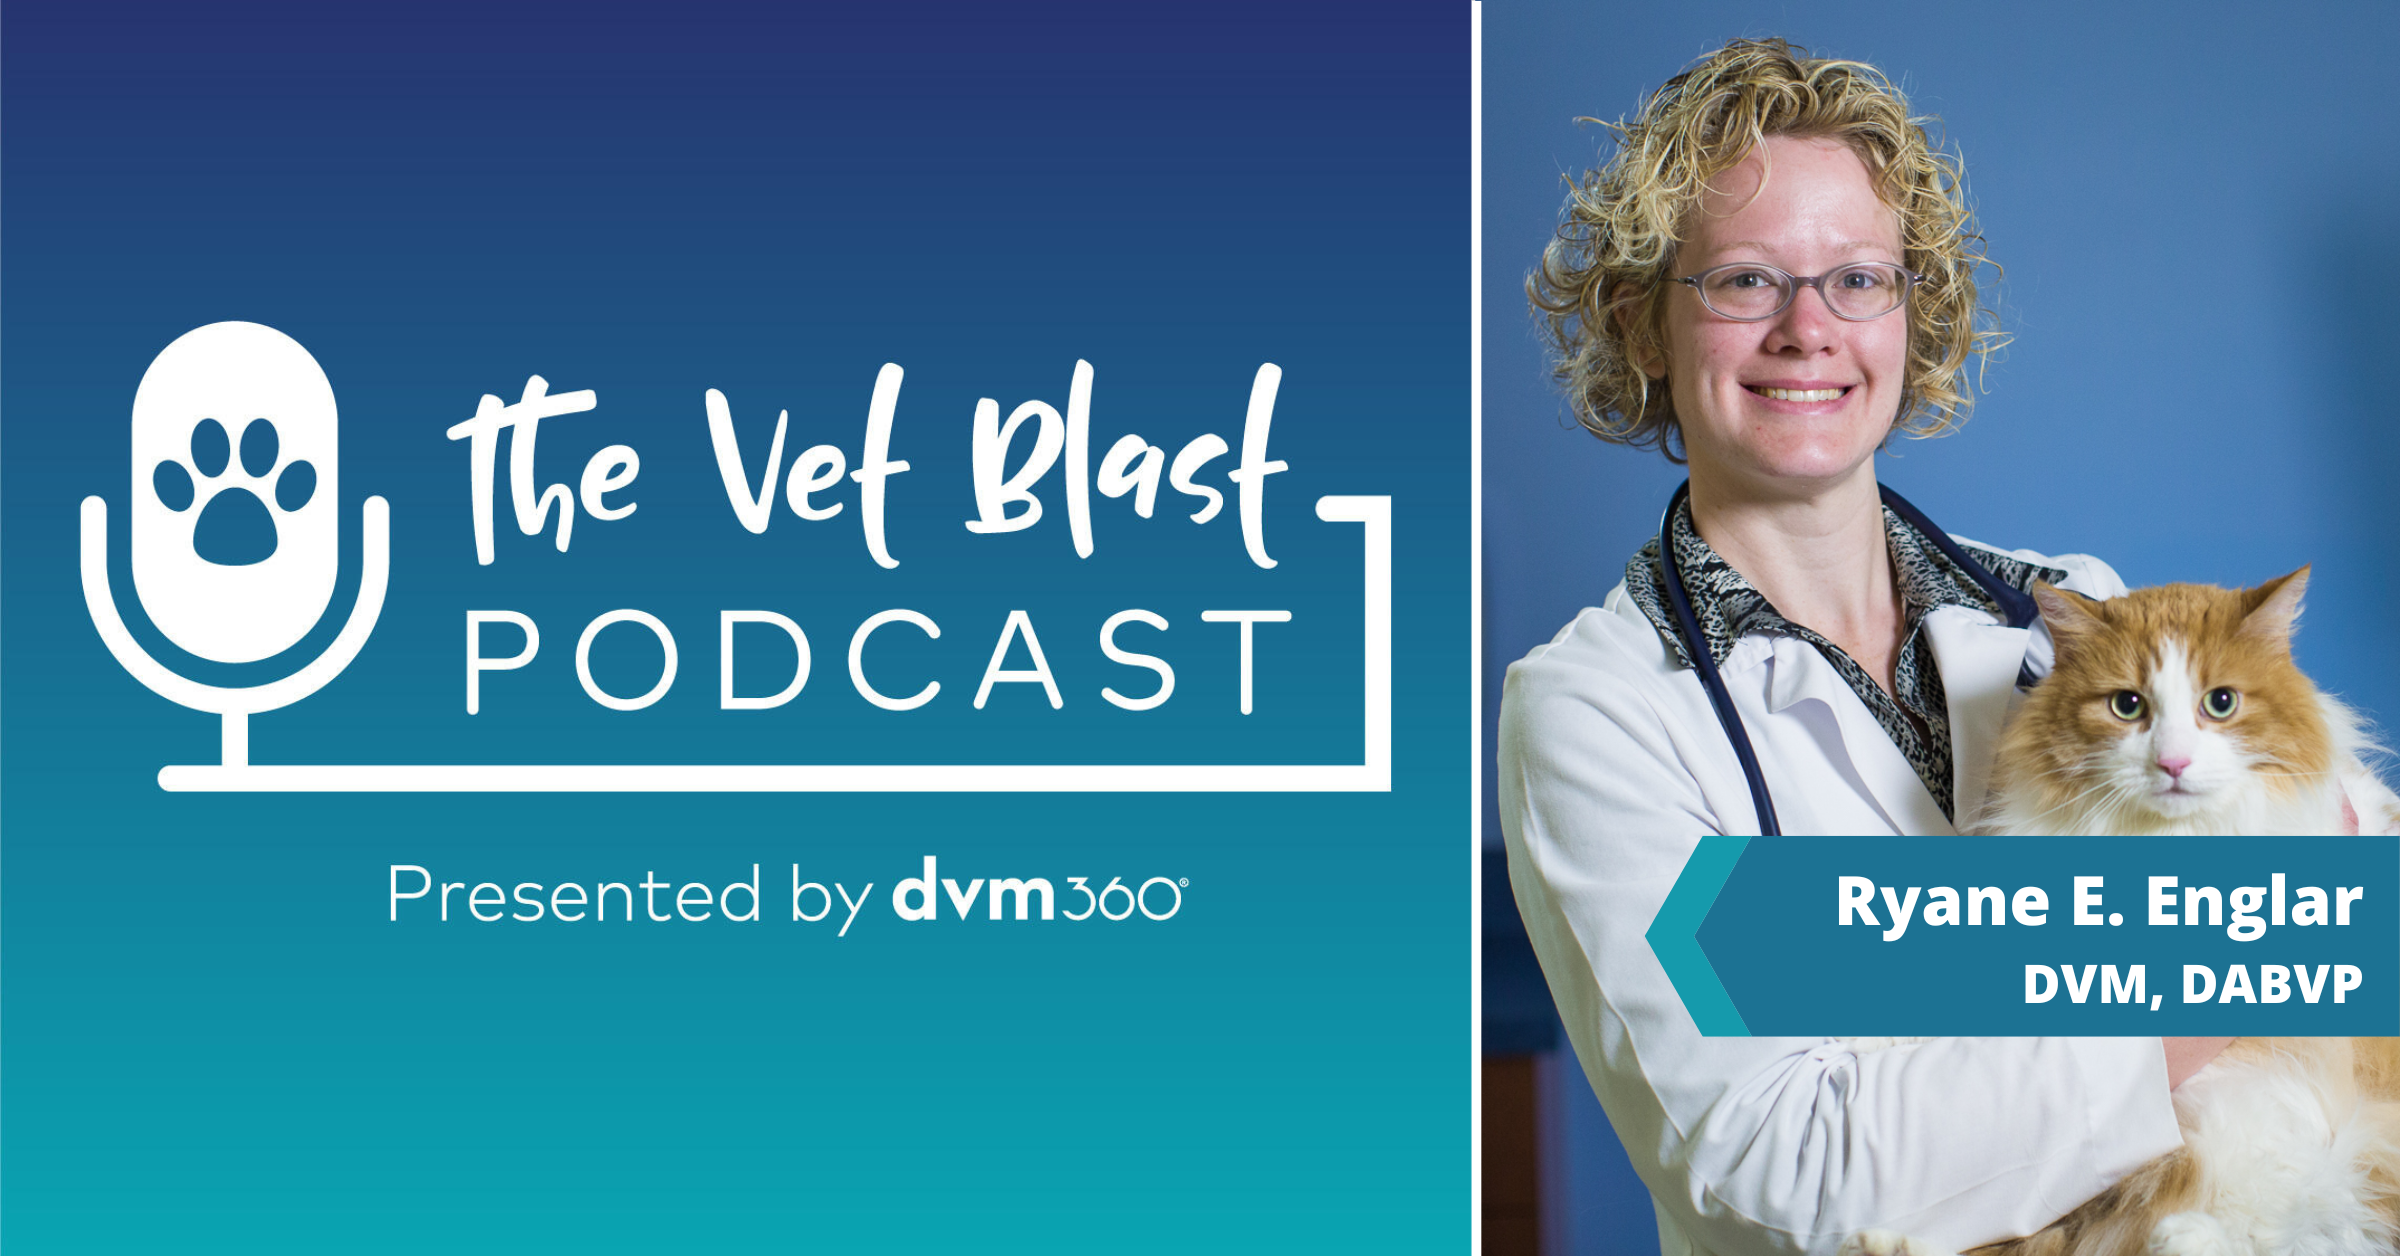 The Vet Blast Podcast with Ryane E. Englar